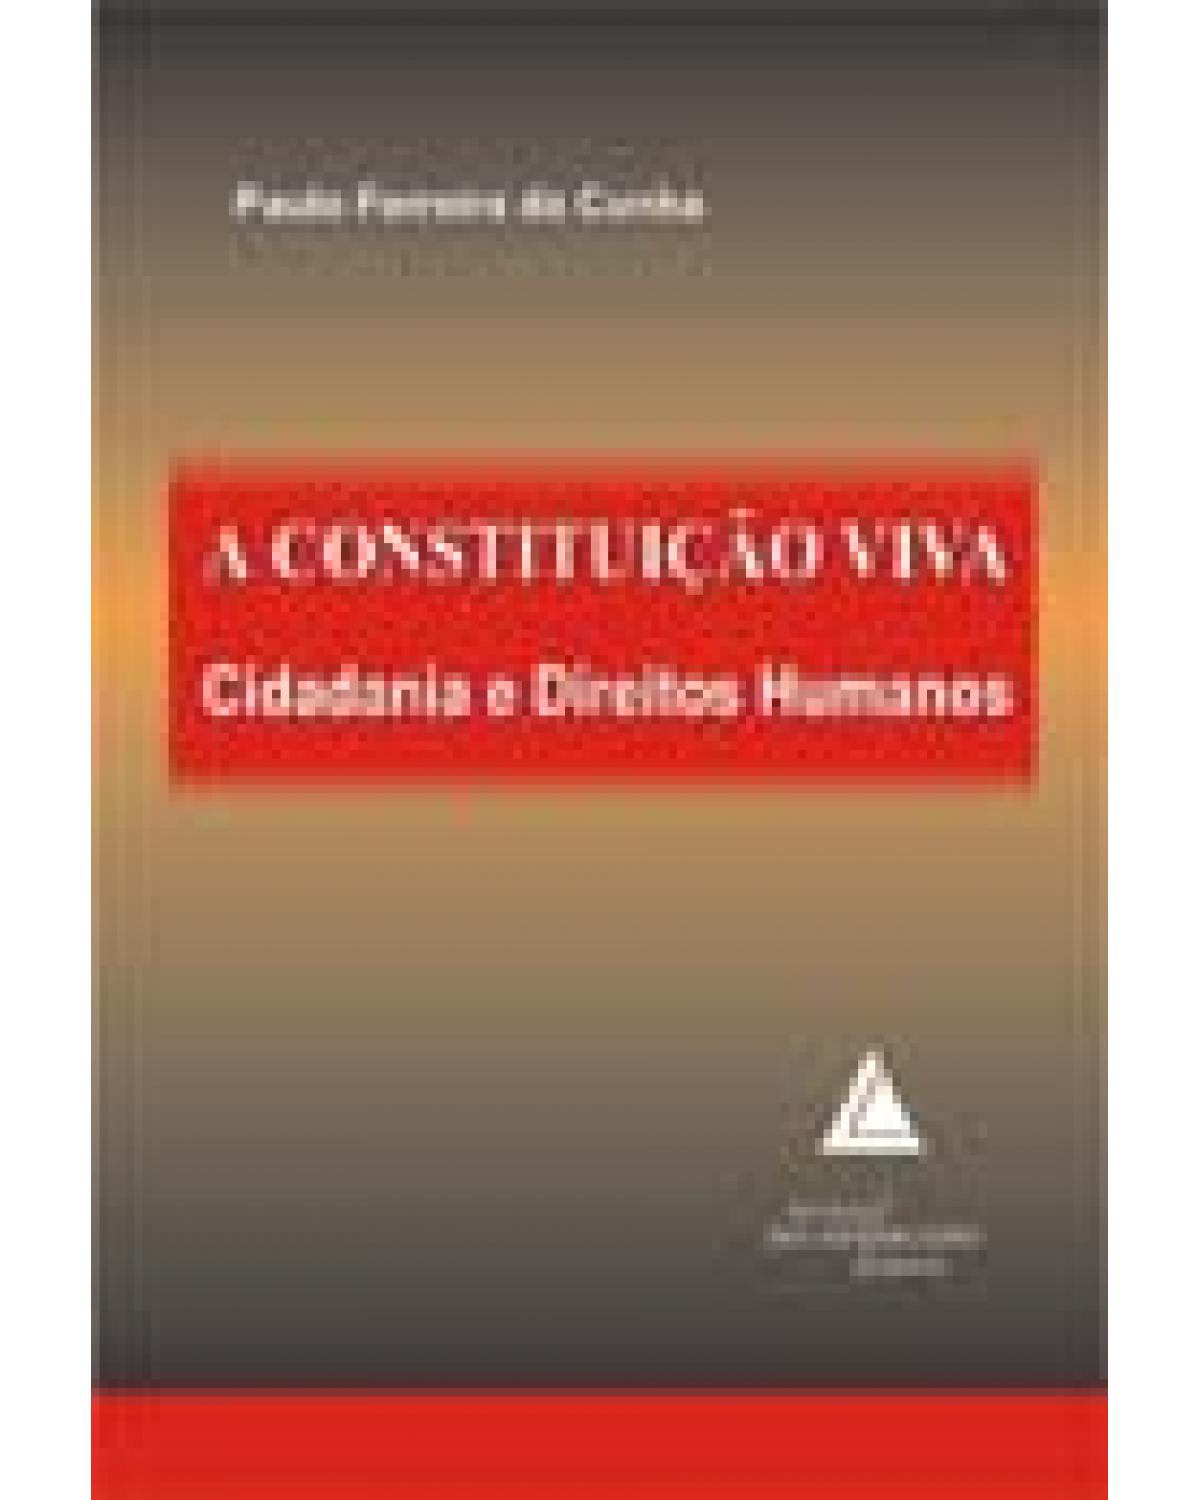 A Constituição viva: Cidadania e direitos humanos - 1ª Edição | 2007